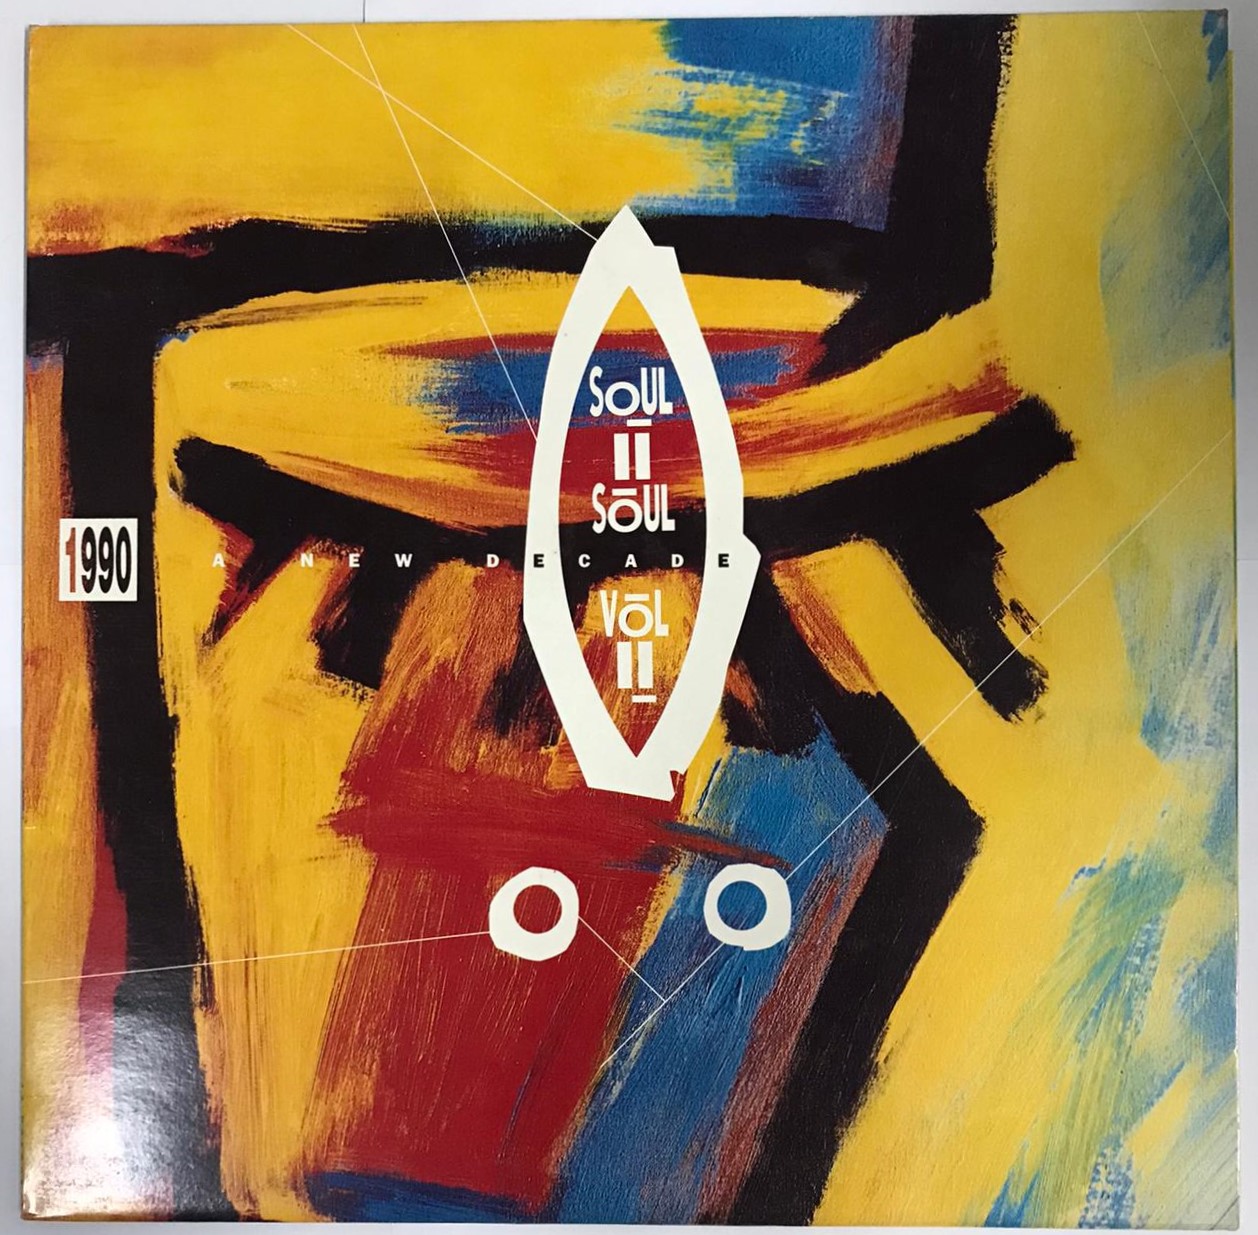 Soul II Soul - Vol. II (1990 - A New Decade) Vinyl